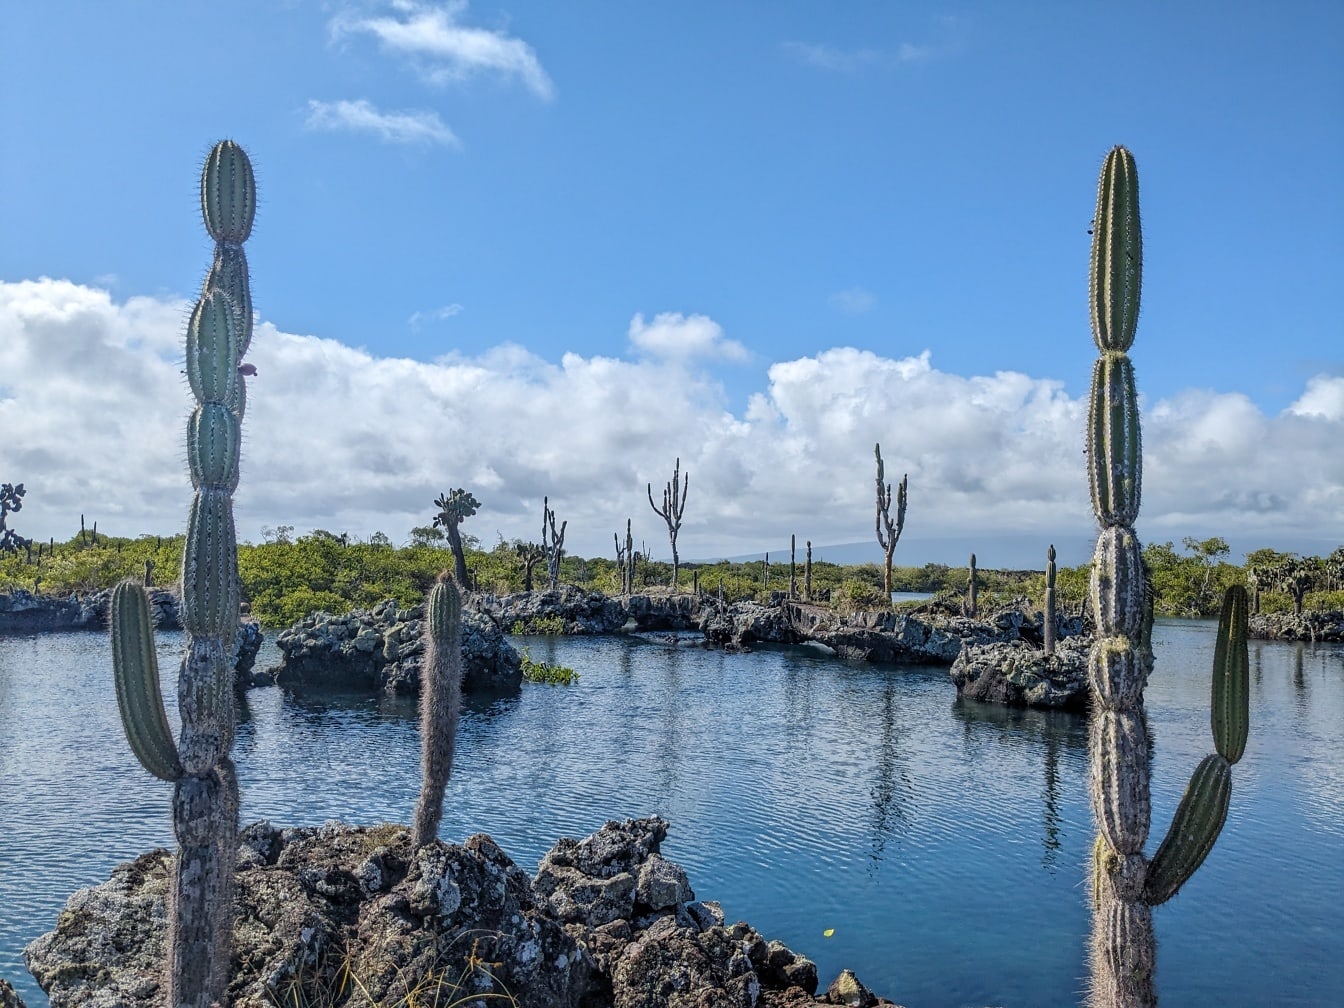 Cảnh quan hùng vĩ tại công viên tự nhiên Galapagos với quả lê gai (Opuntia galapageia) một loài xương rồng cận nhiệt đới